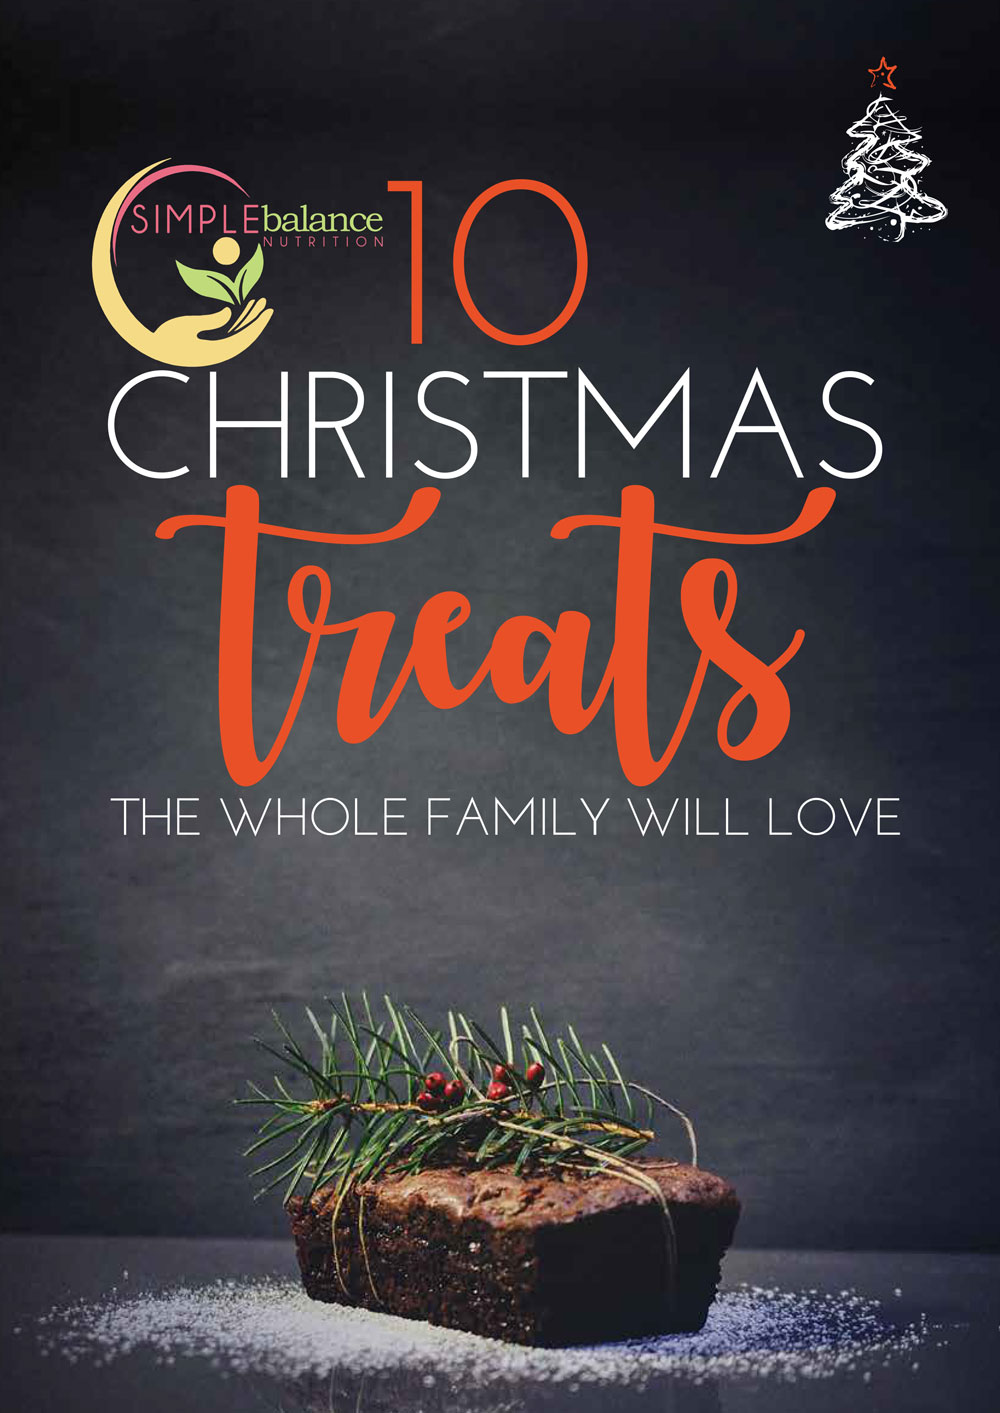 10_Christmas_Treats_family_will_love-2020-1